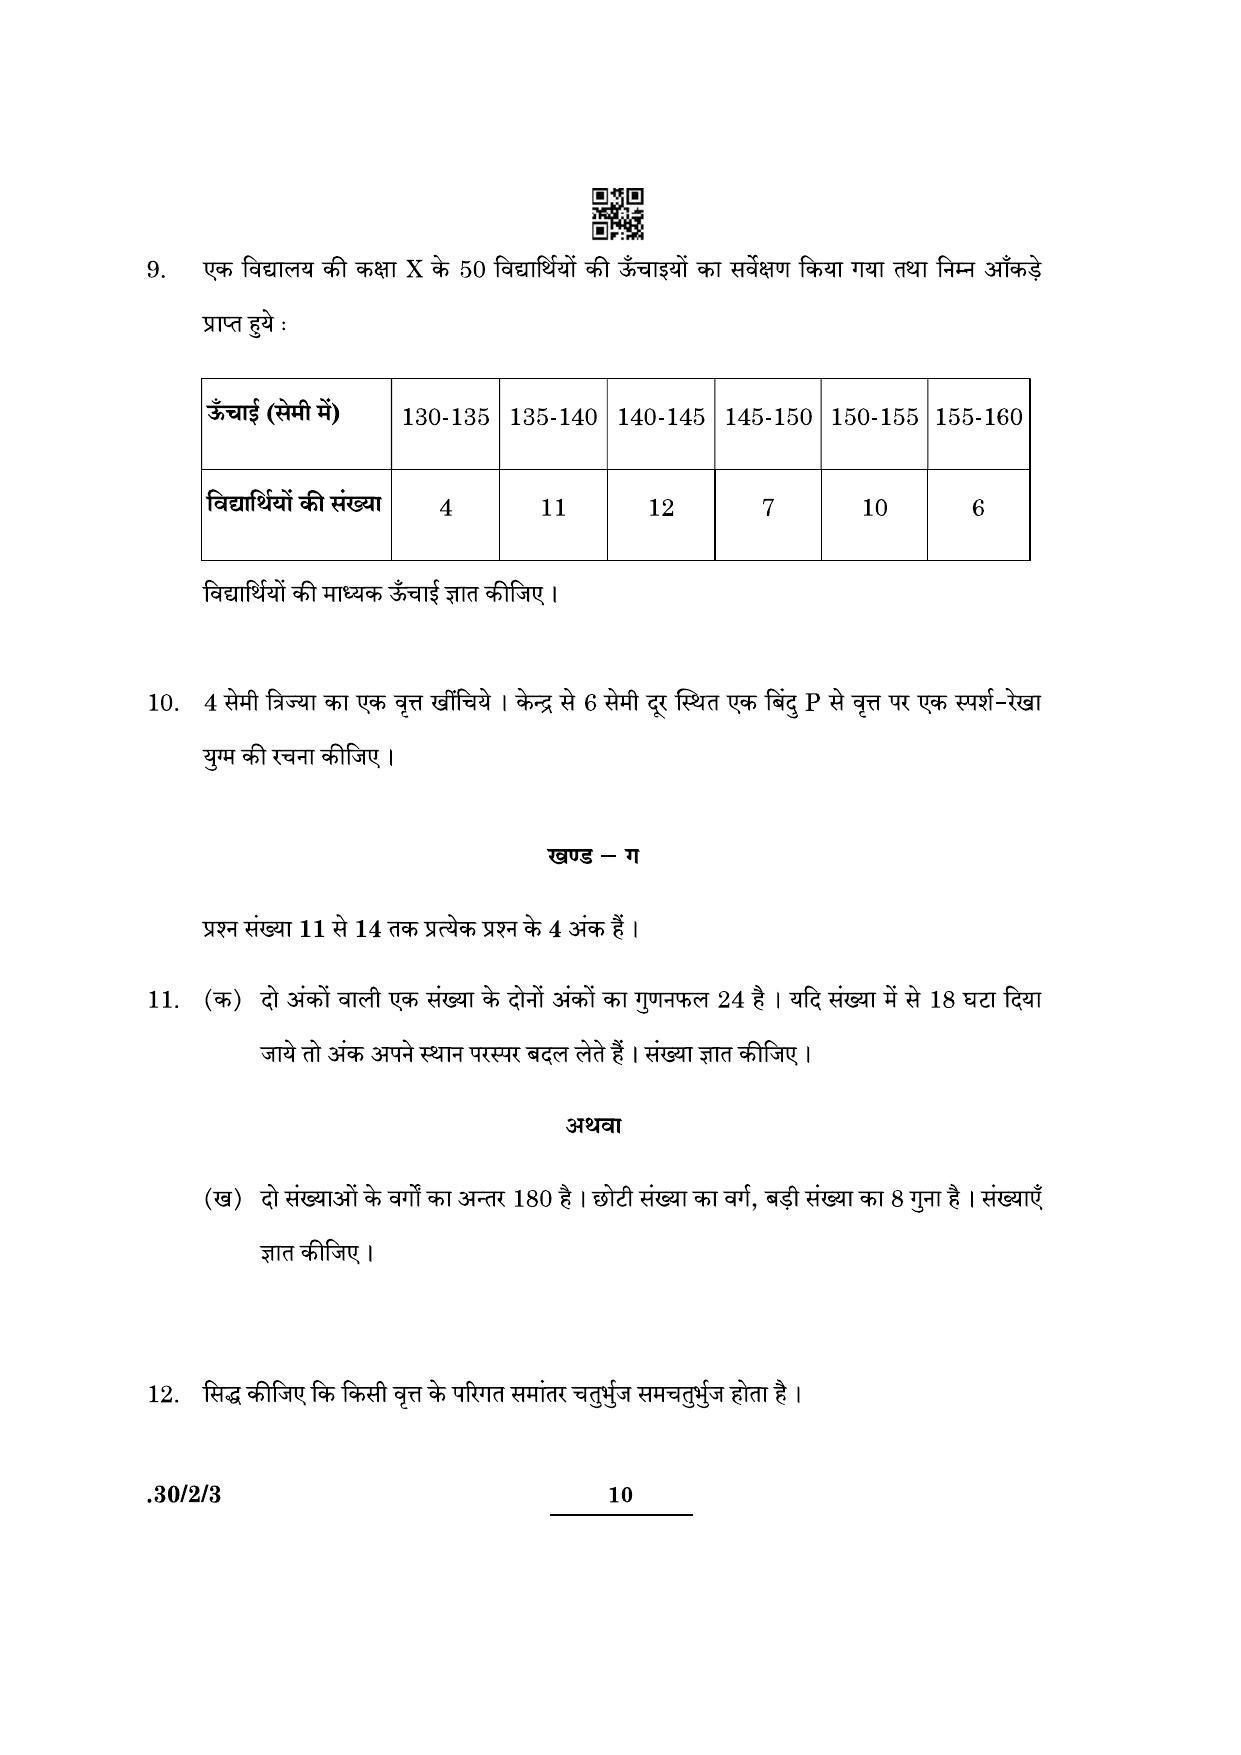 CBSE Class 10 Maths (30/2/3 - SET III) 2022 Question Paper - Page 10